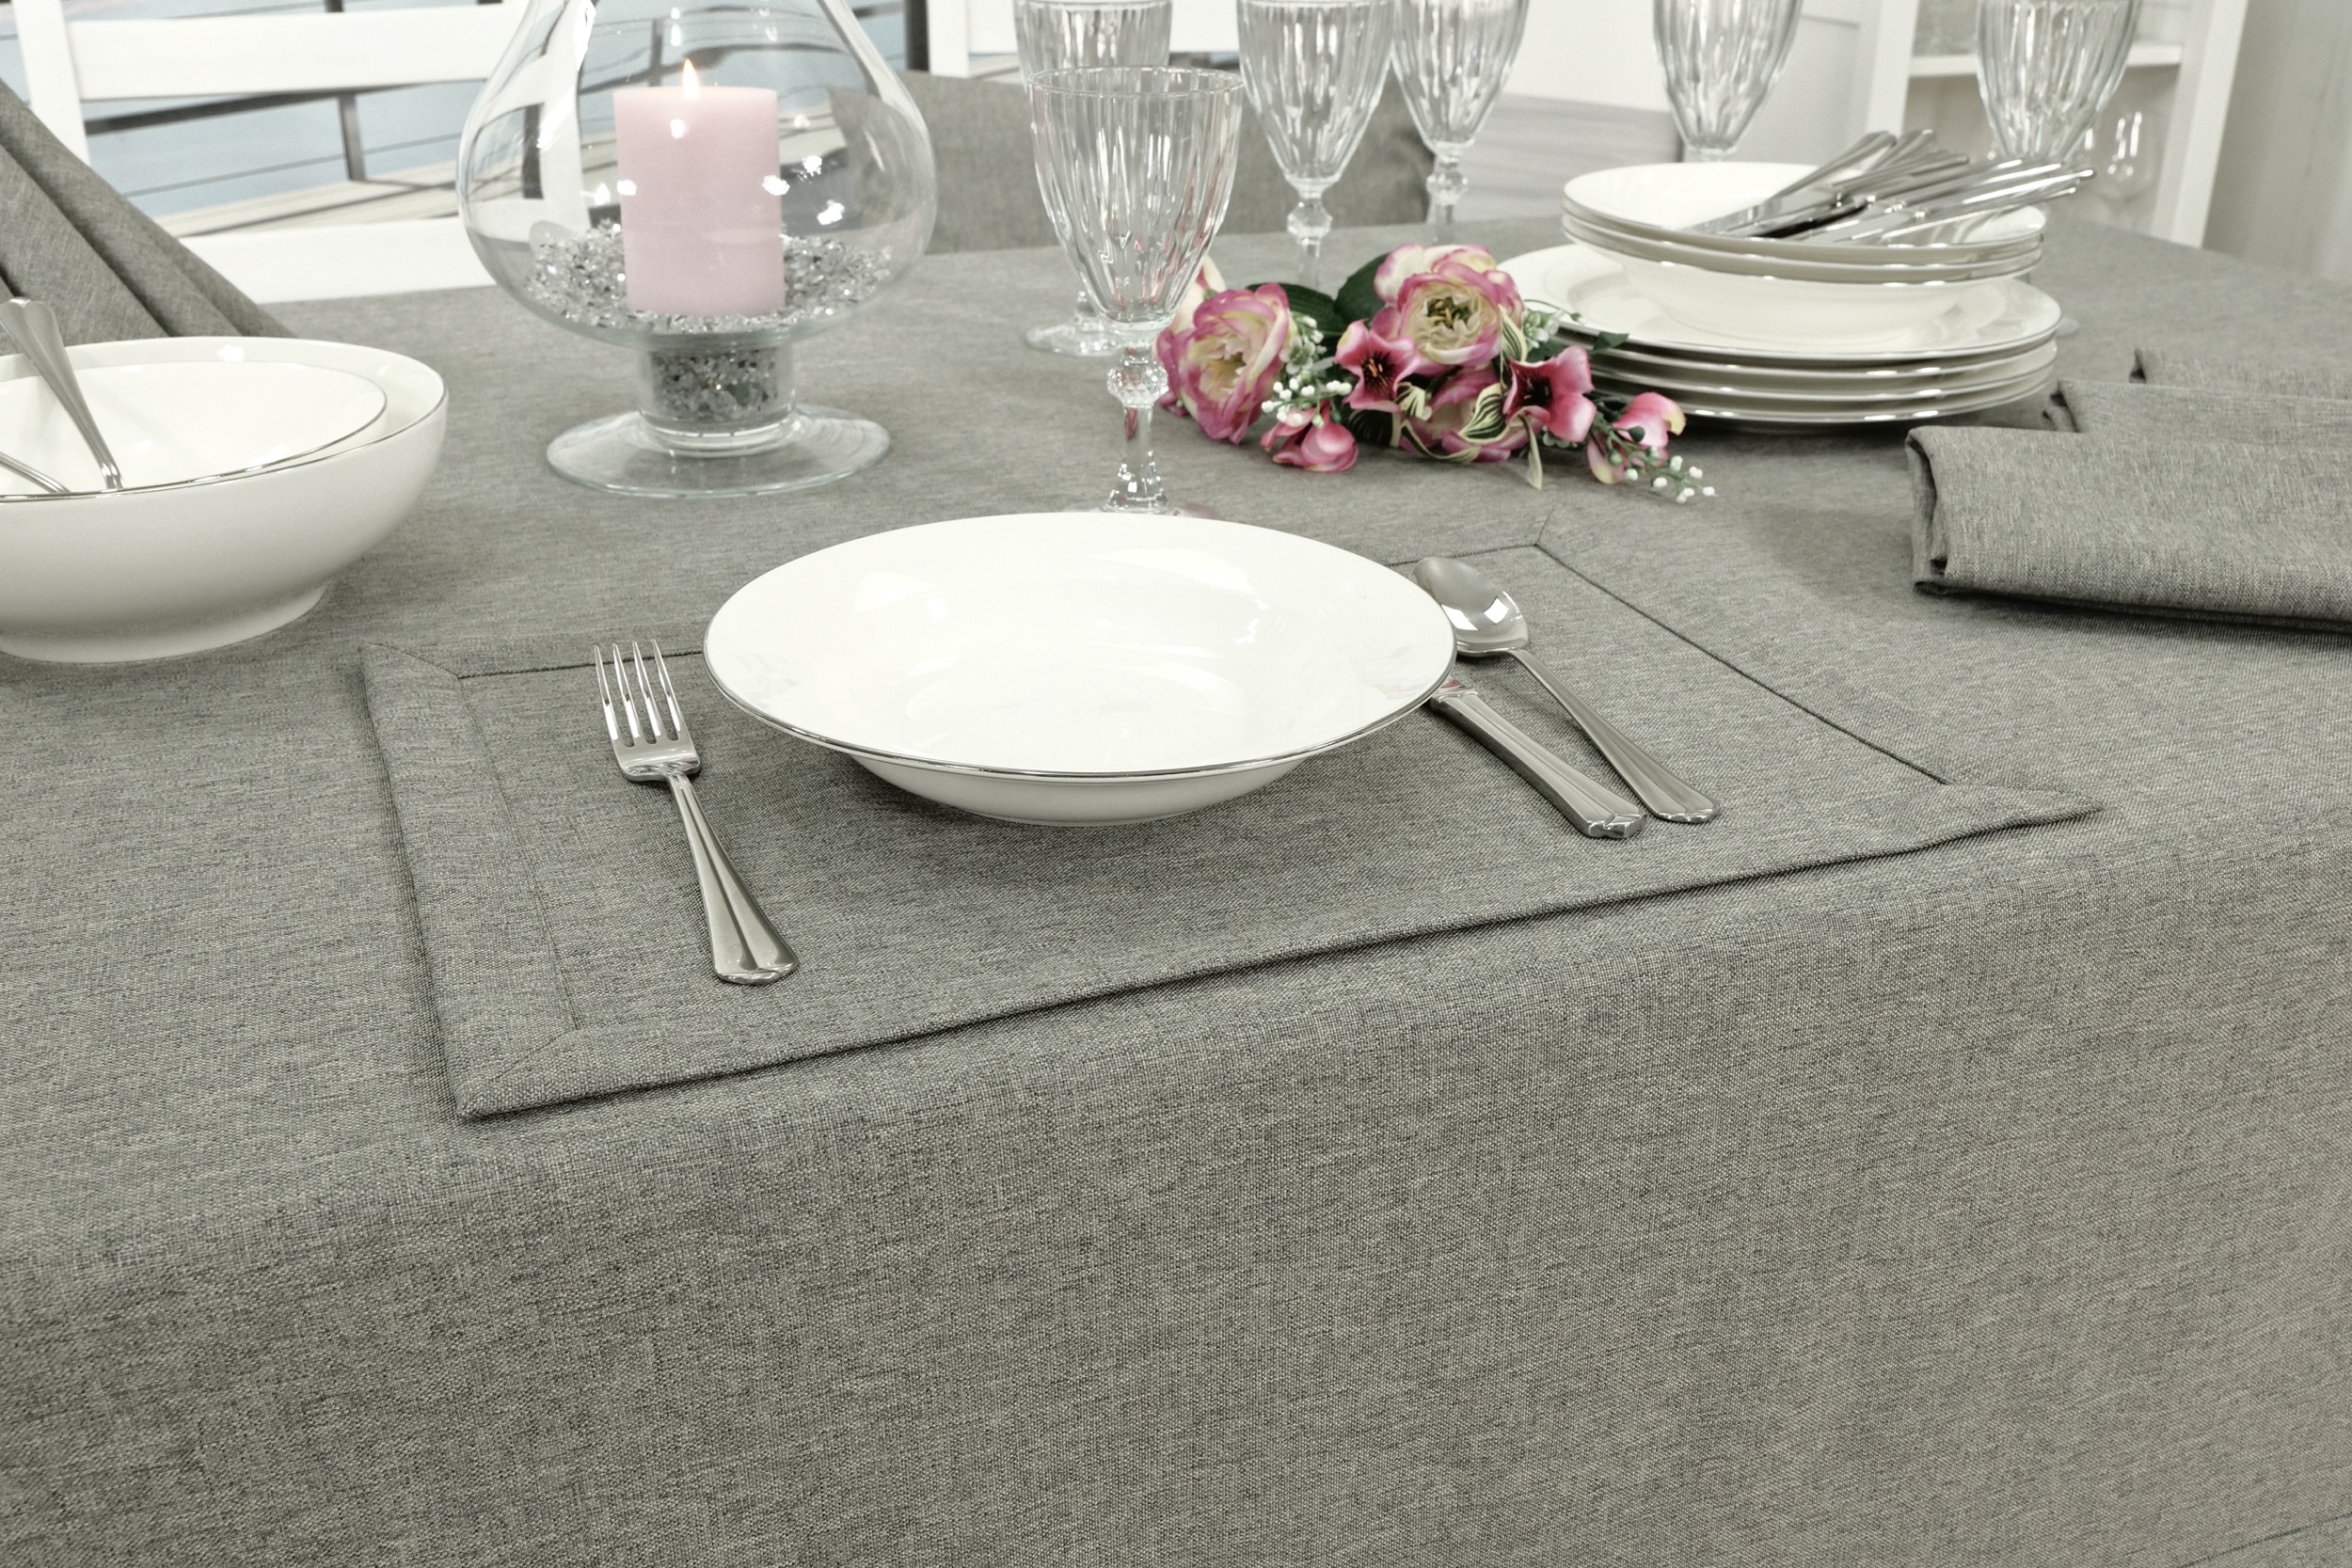 Edle Tischdecke Grau einfarbig Peony Breite 110 cm